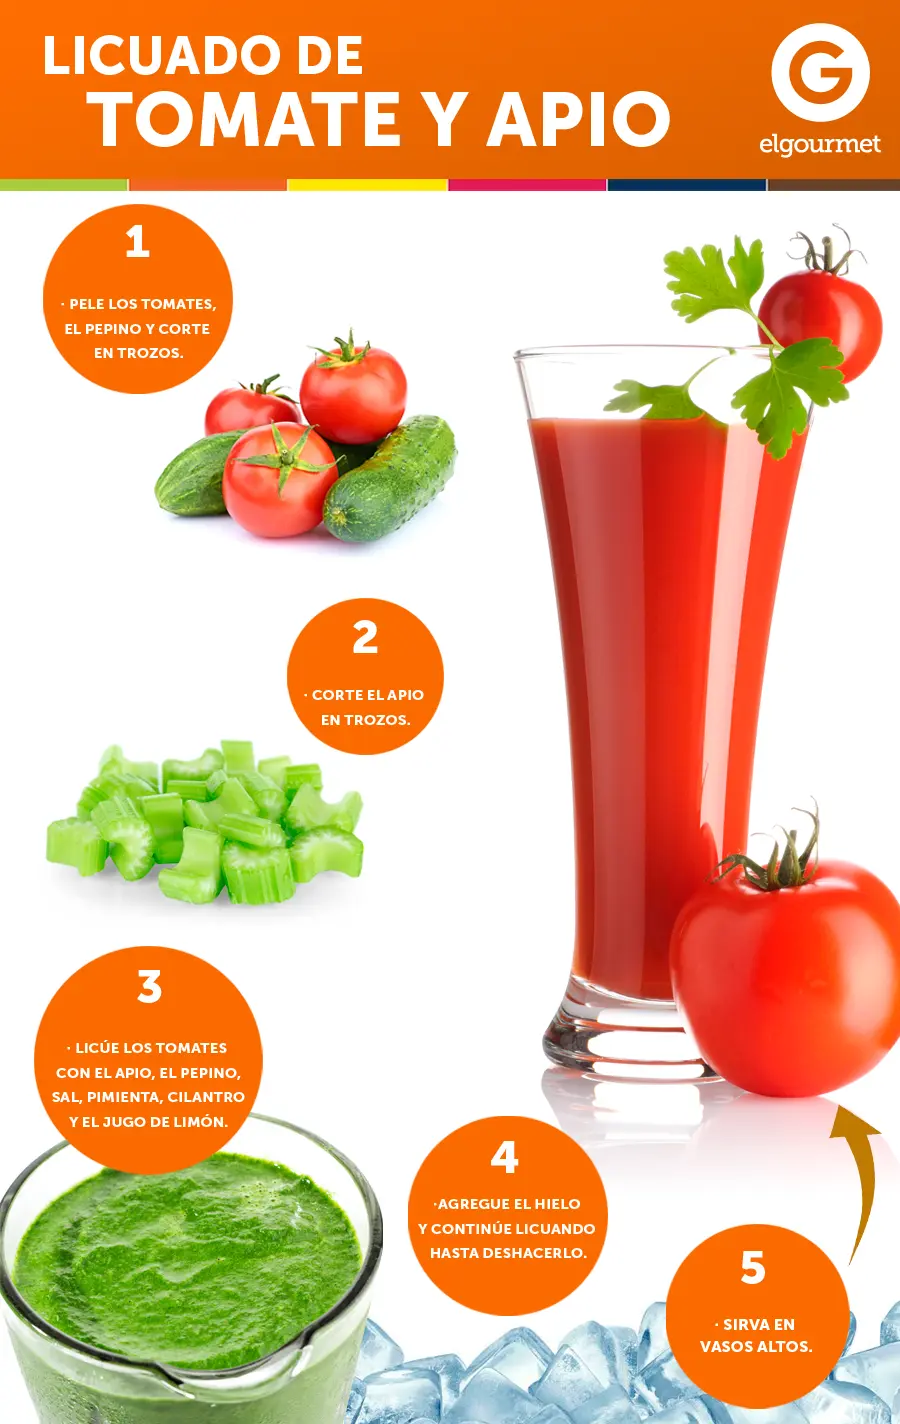 jugo de tomate y apio - Qué beneficios tiene el jugo de tomate y apio